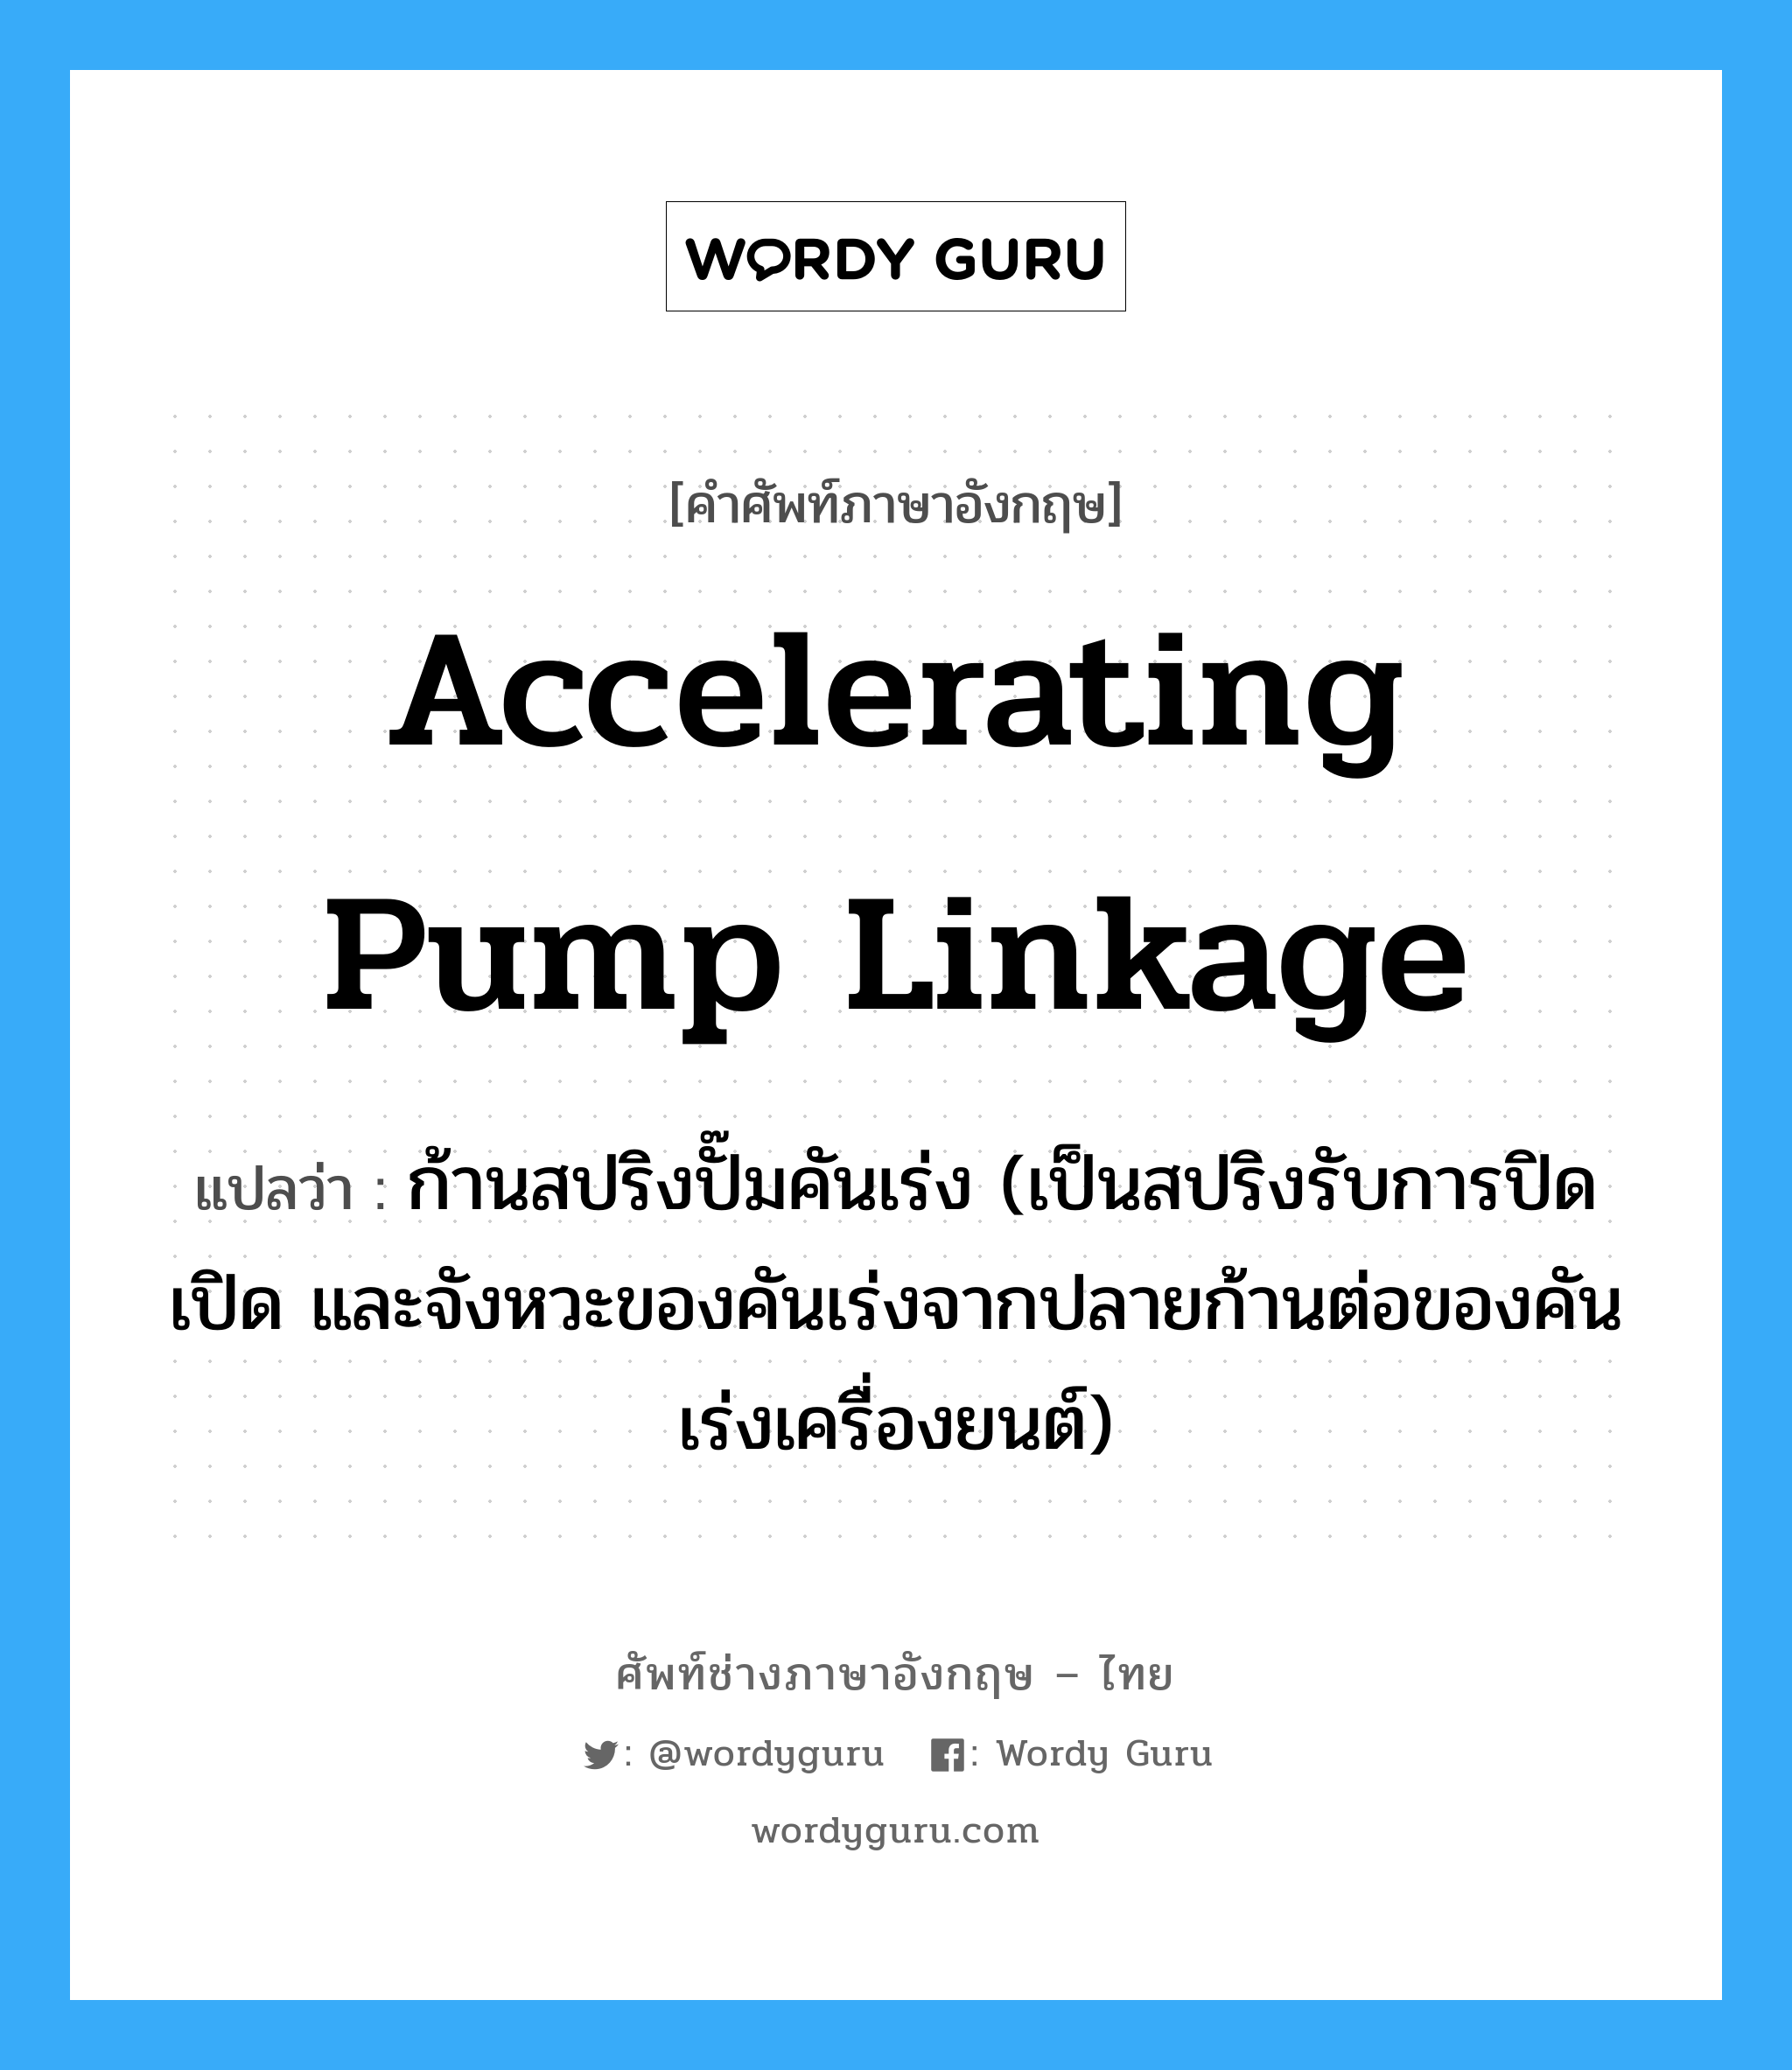 accelerating pump linkage แปลว่า?, คำศัพท์ช่างภาษาอังกฤษ - ไทย accelerating pump linkage คำศัพท์ภาษาอังกฤษ accelerating pump linkage แปลว่า ก้านสปริงปั๊มคันเร่ง (เป็นสปริงรับการปิดเปิด และจังหวะของคันเร่งจากปลายก้านต่อของคันเร่งเครื่องยนต์)